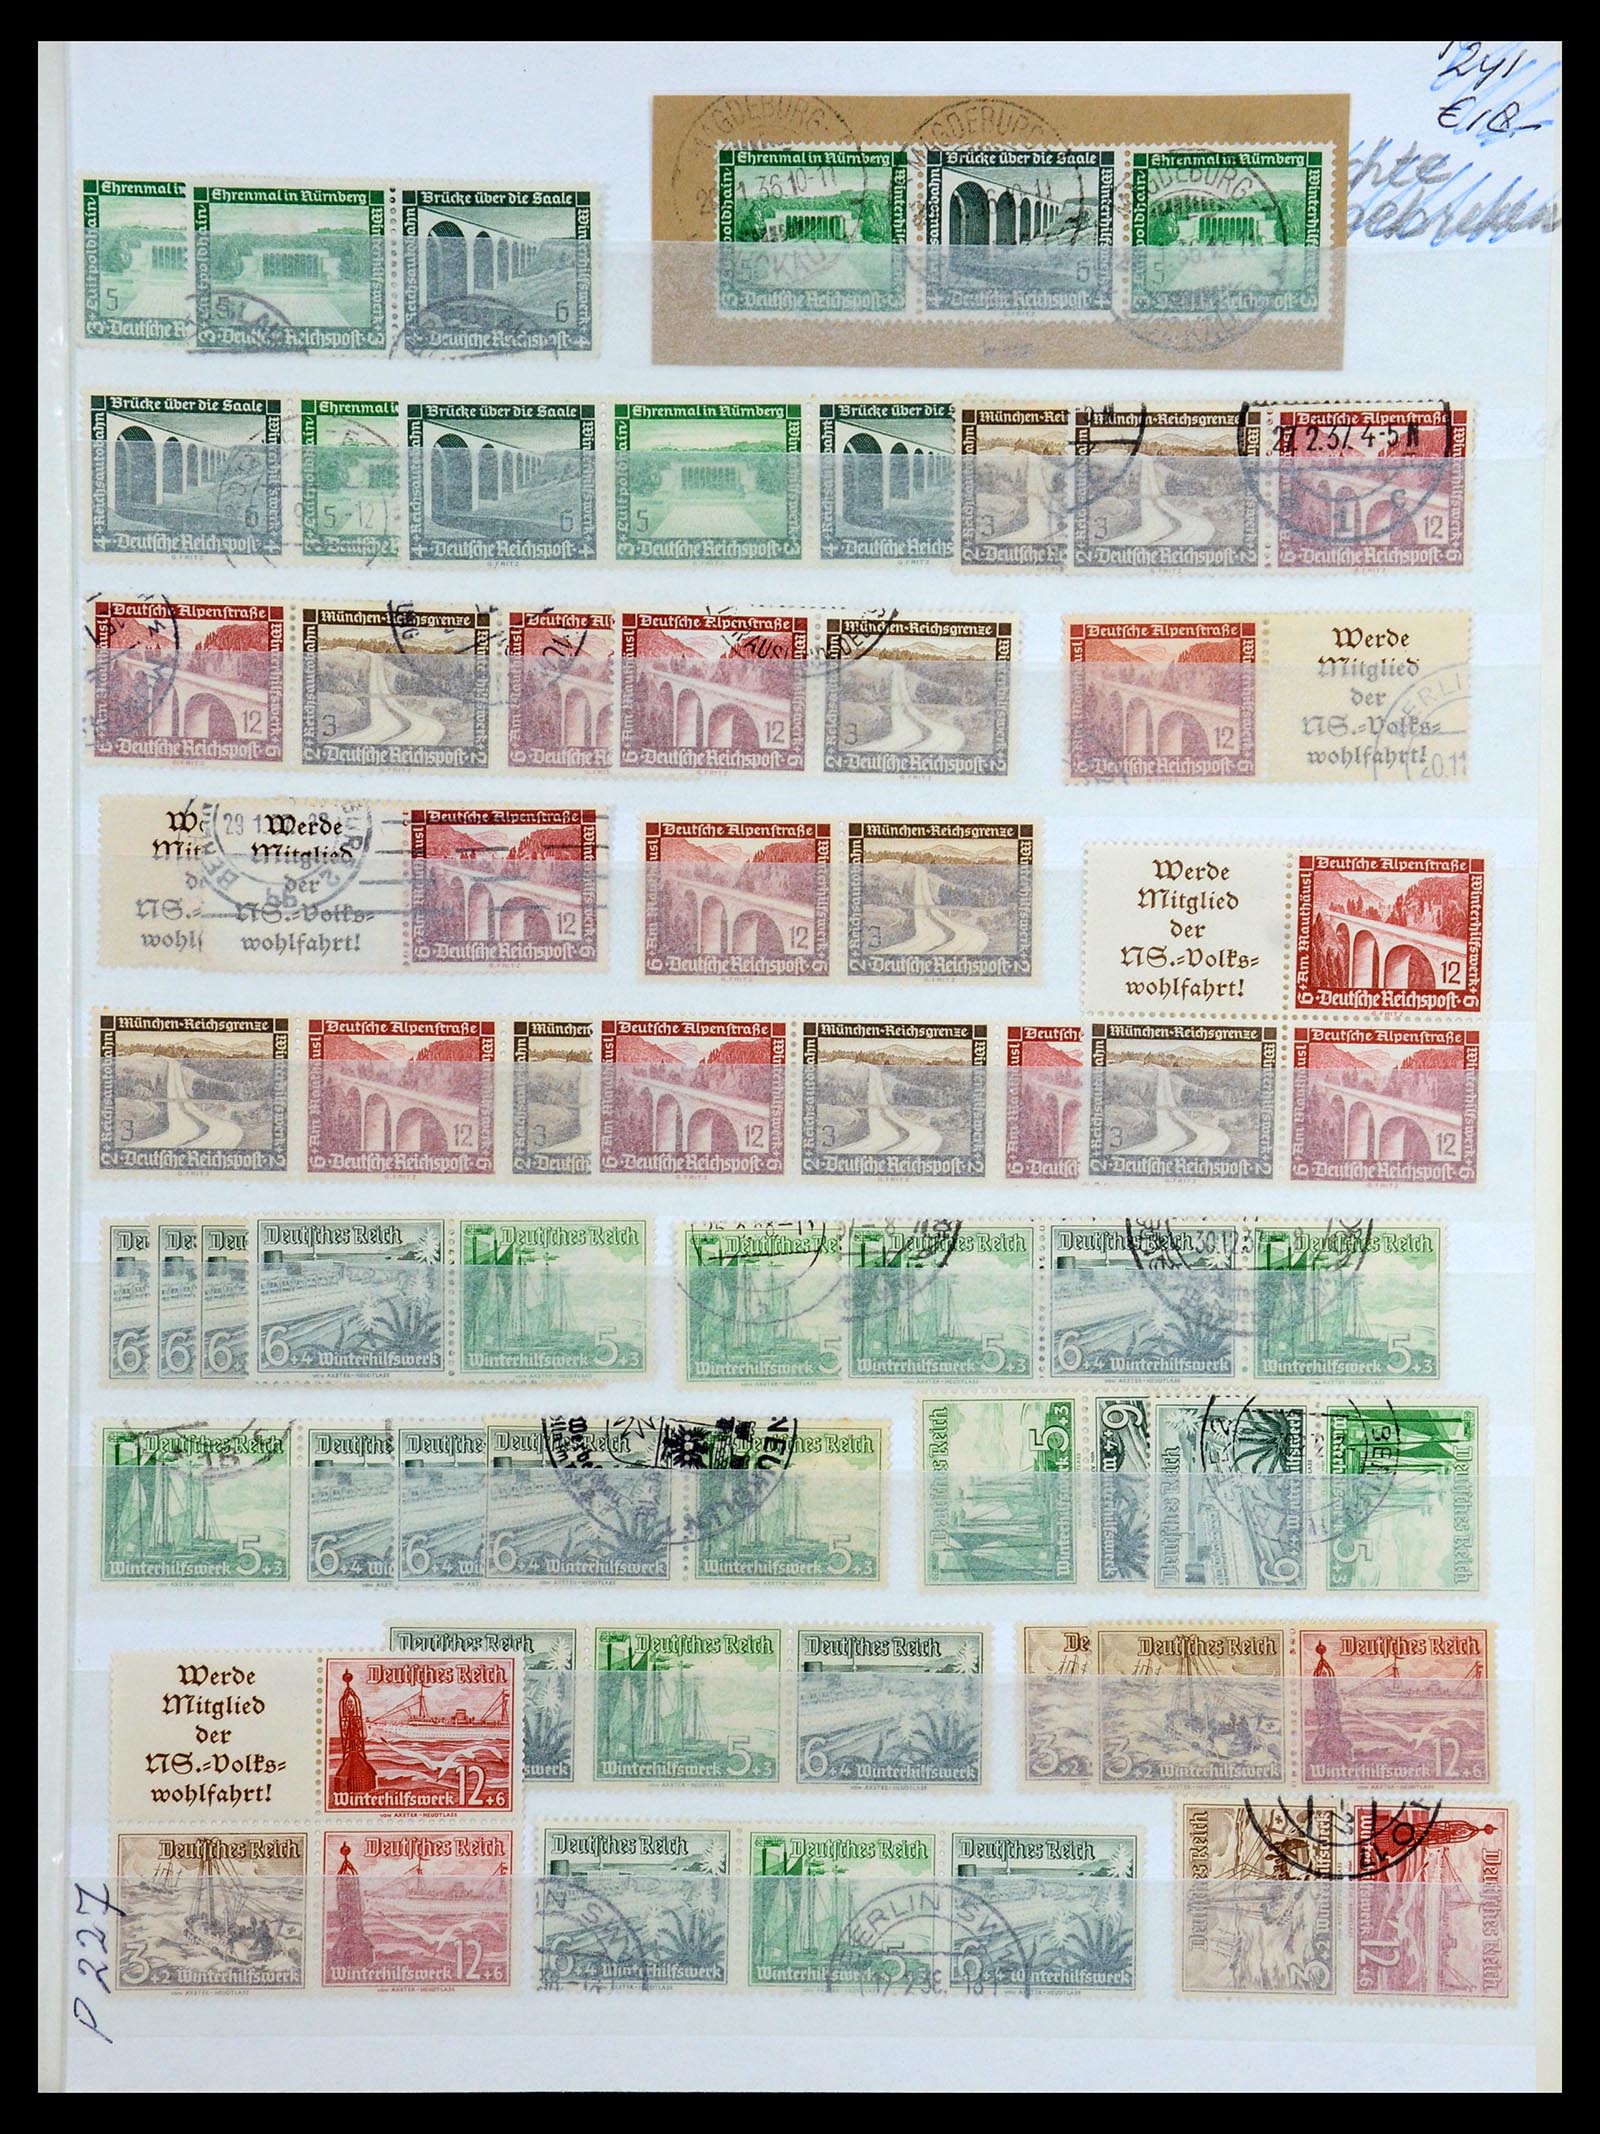 36370 020 - Postzegelverzameling 36370 Duitsland combinaties 1910-1980.